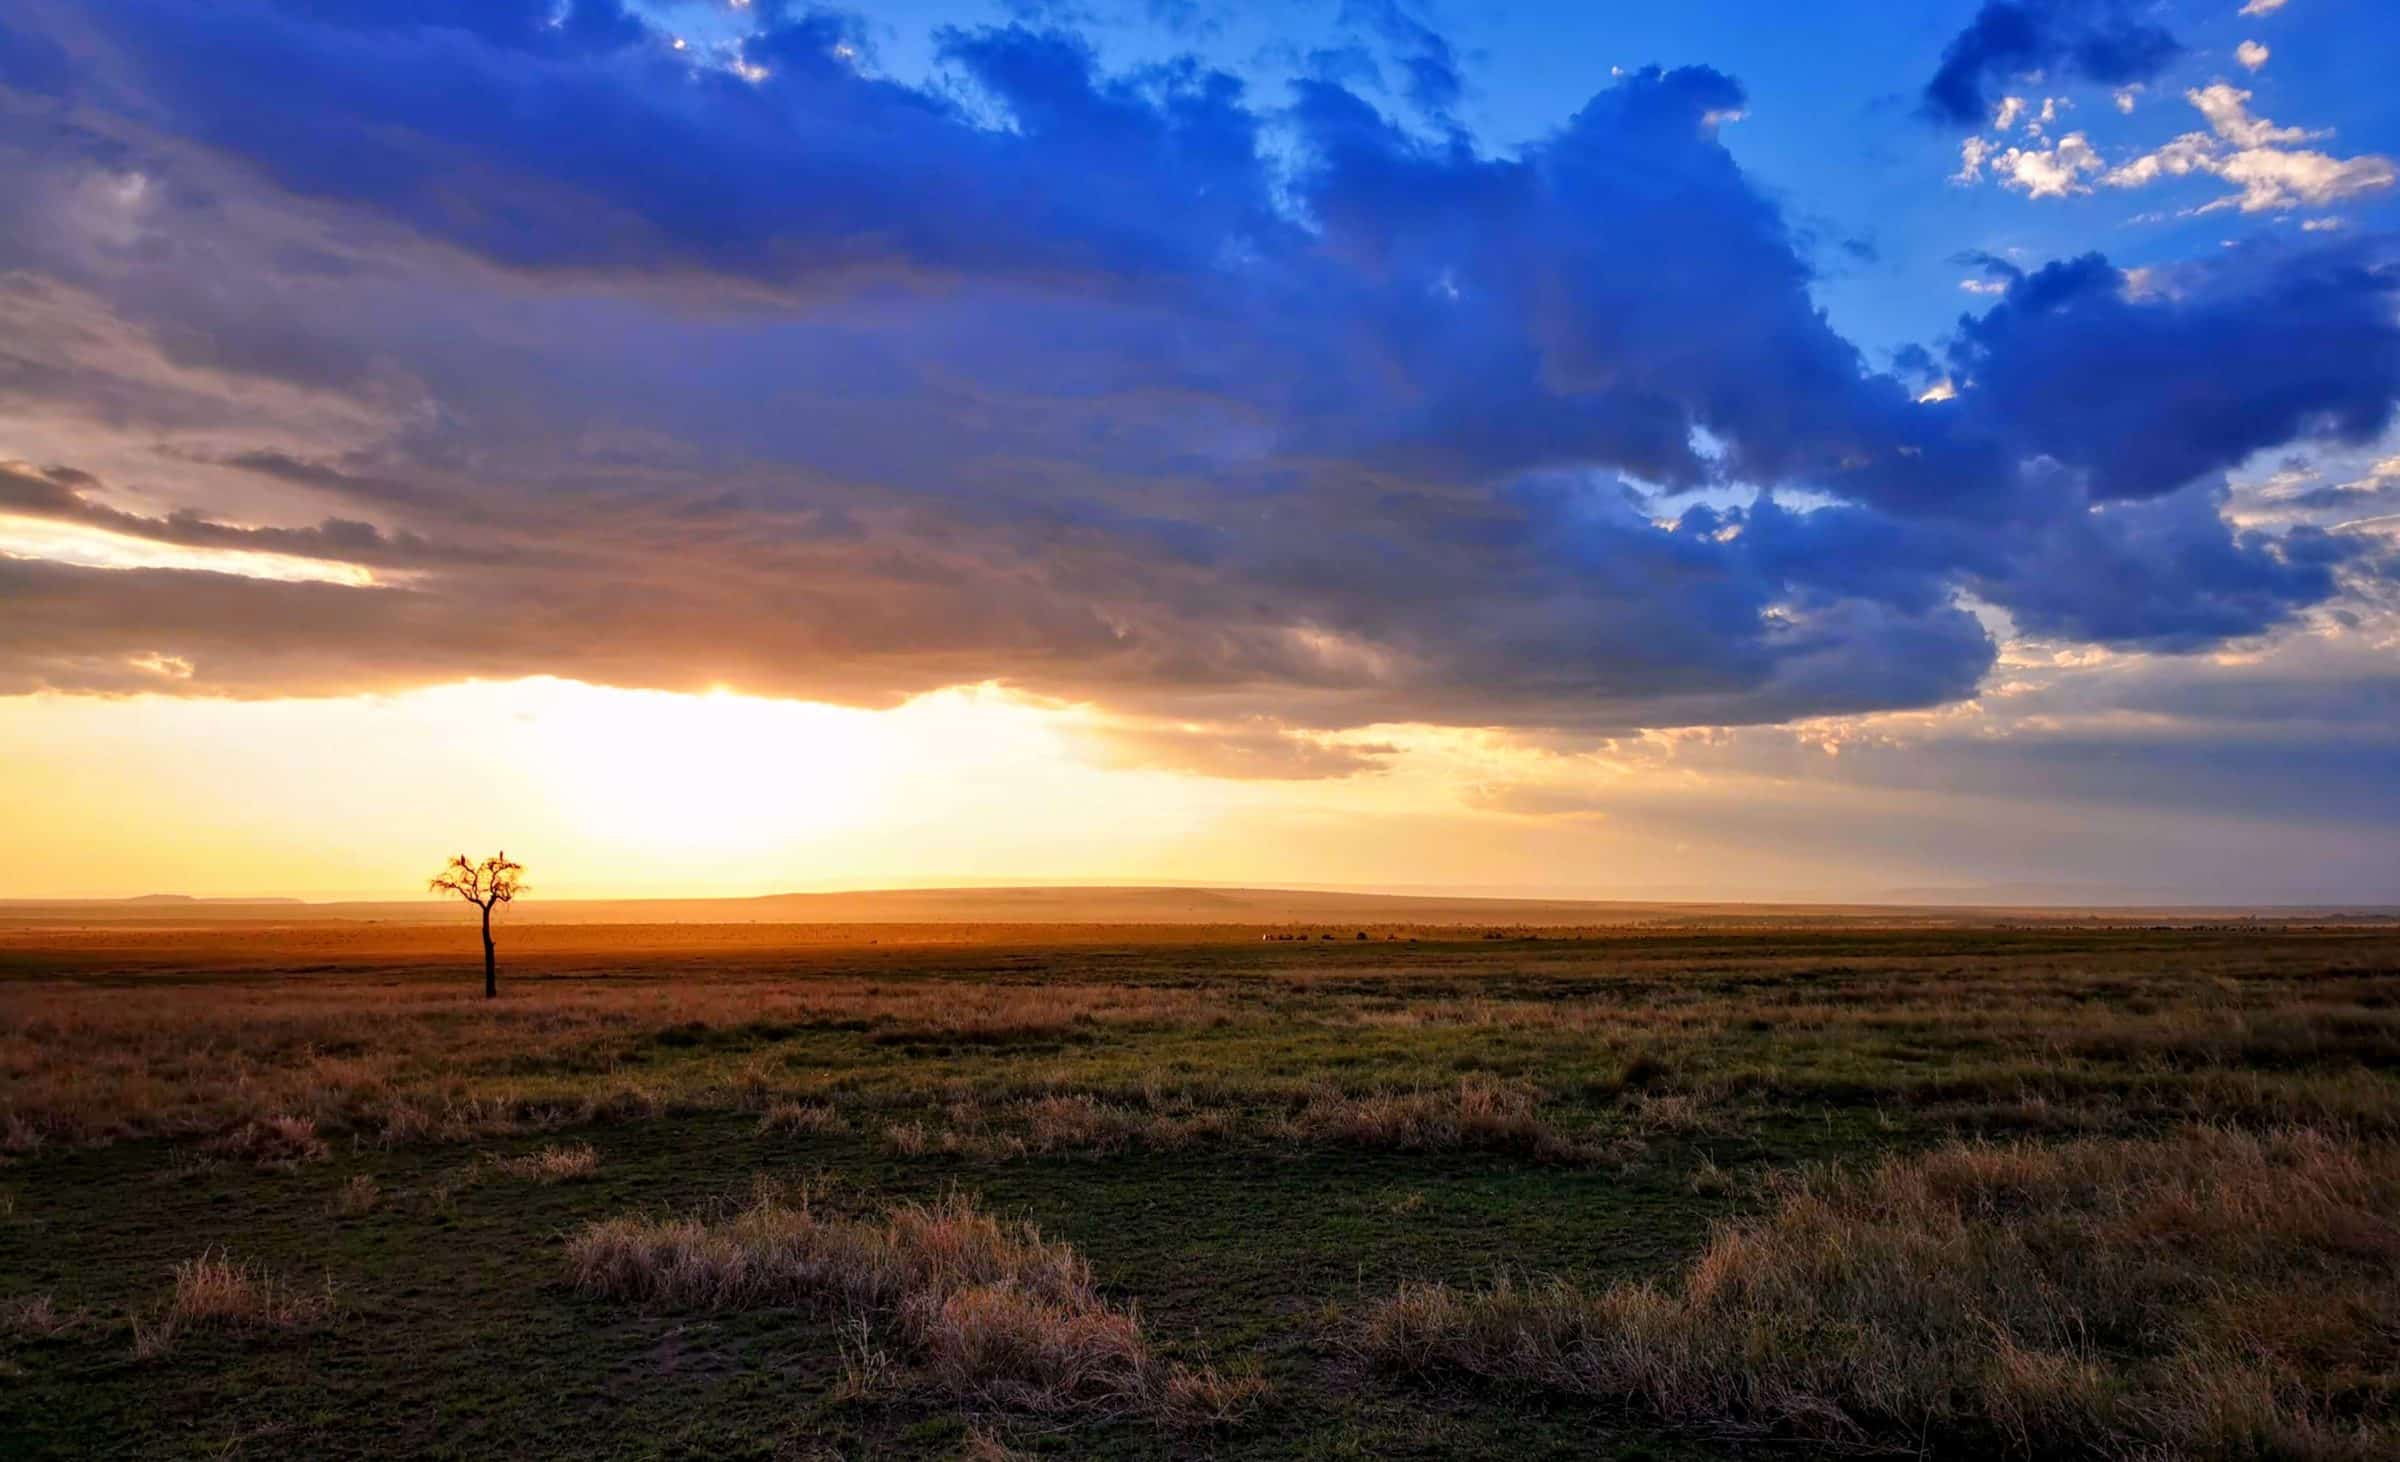 Gros nuages, arbres errants et quelques animaux en arrière-plan. Juste un autre jour à Maasai Mara